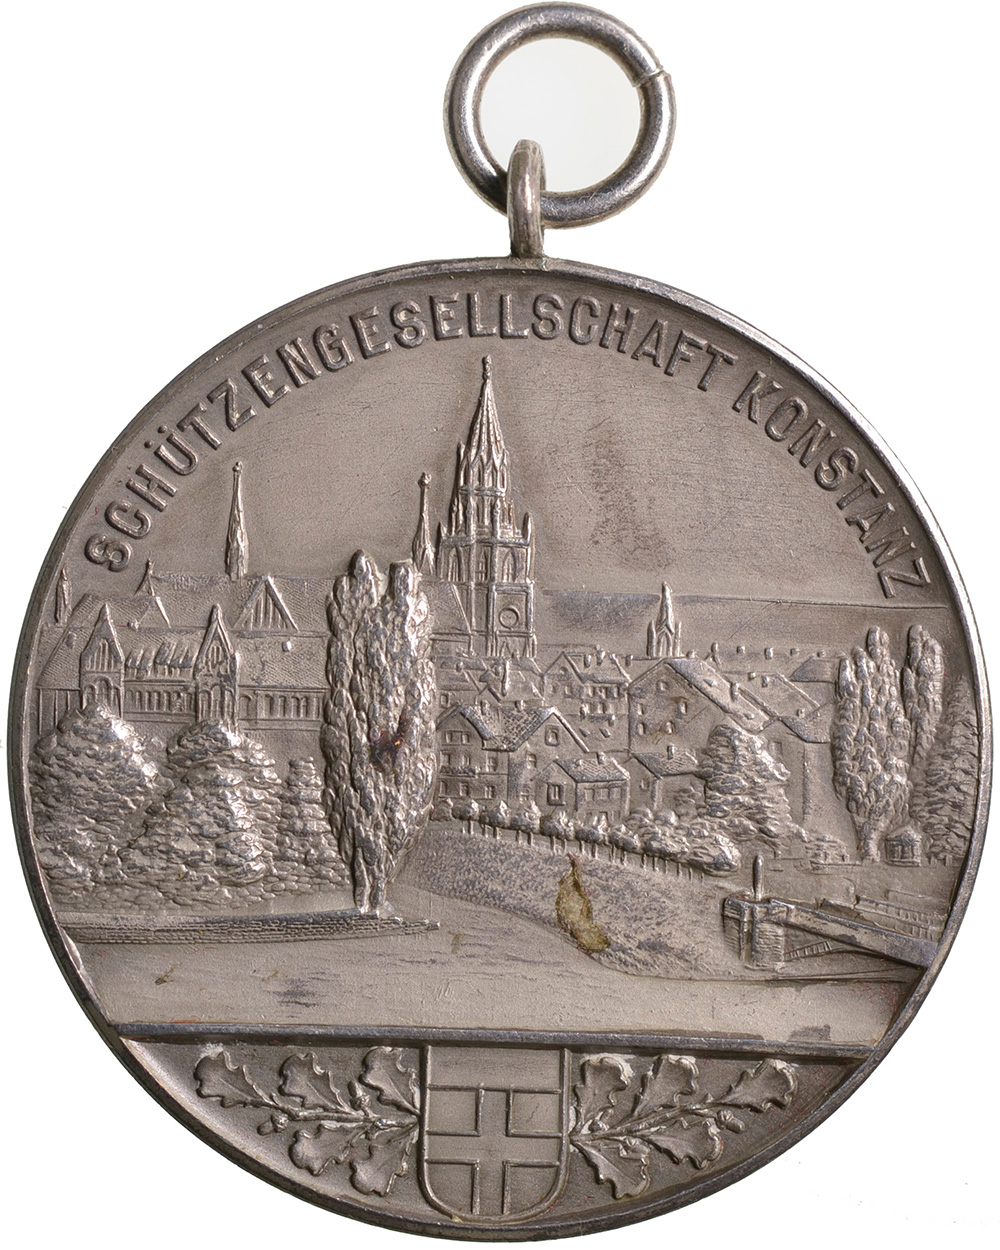 Deutschland, Konstanz, Schützengesellschaft, 1910, vz, Silber, 2125a